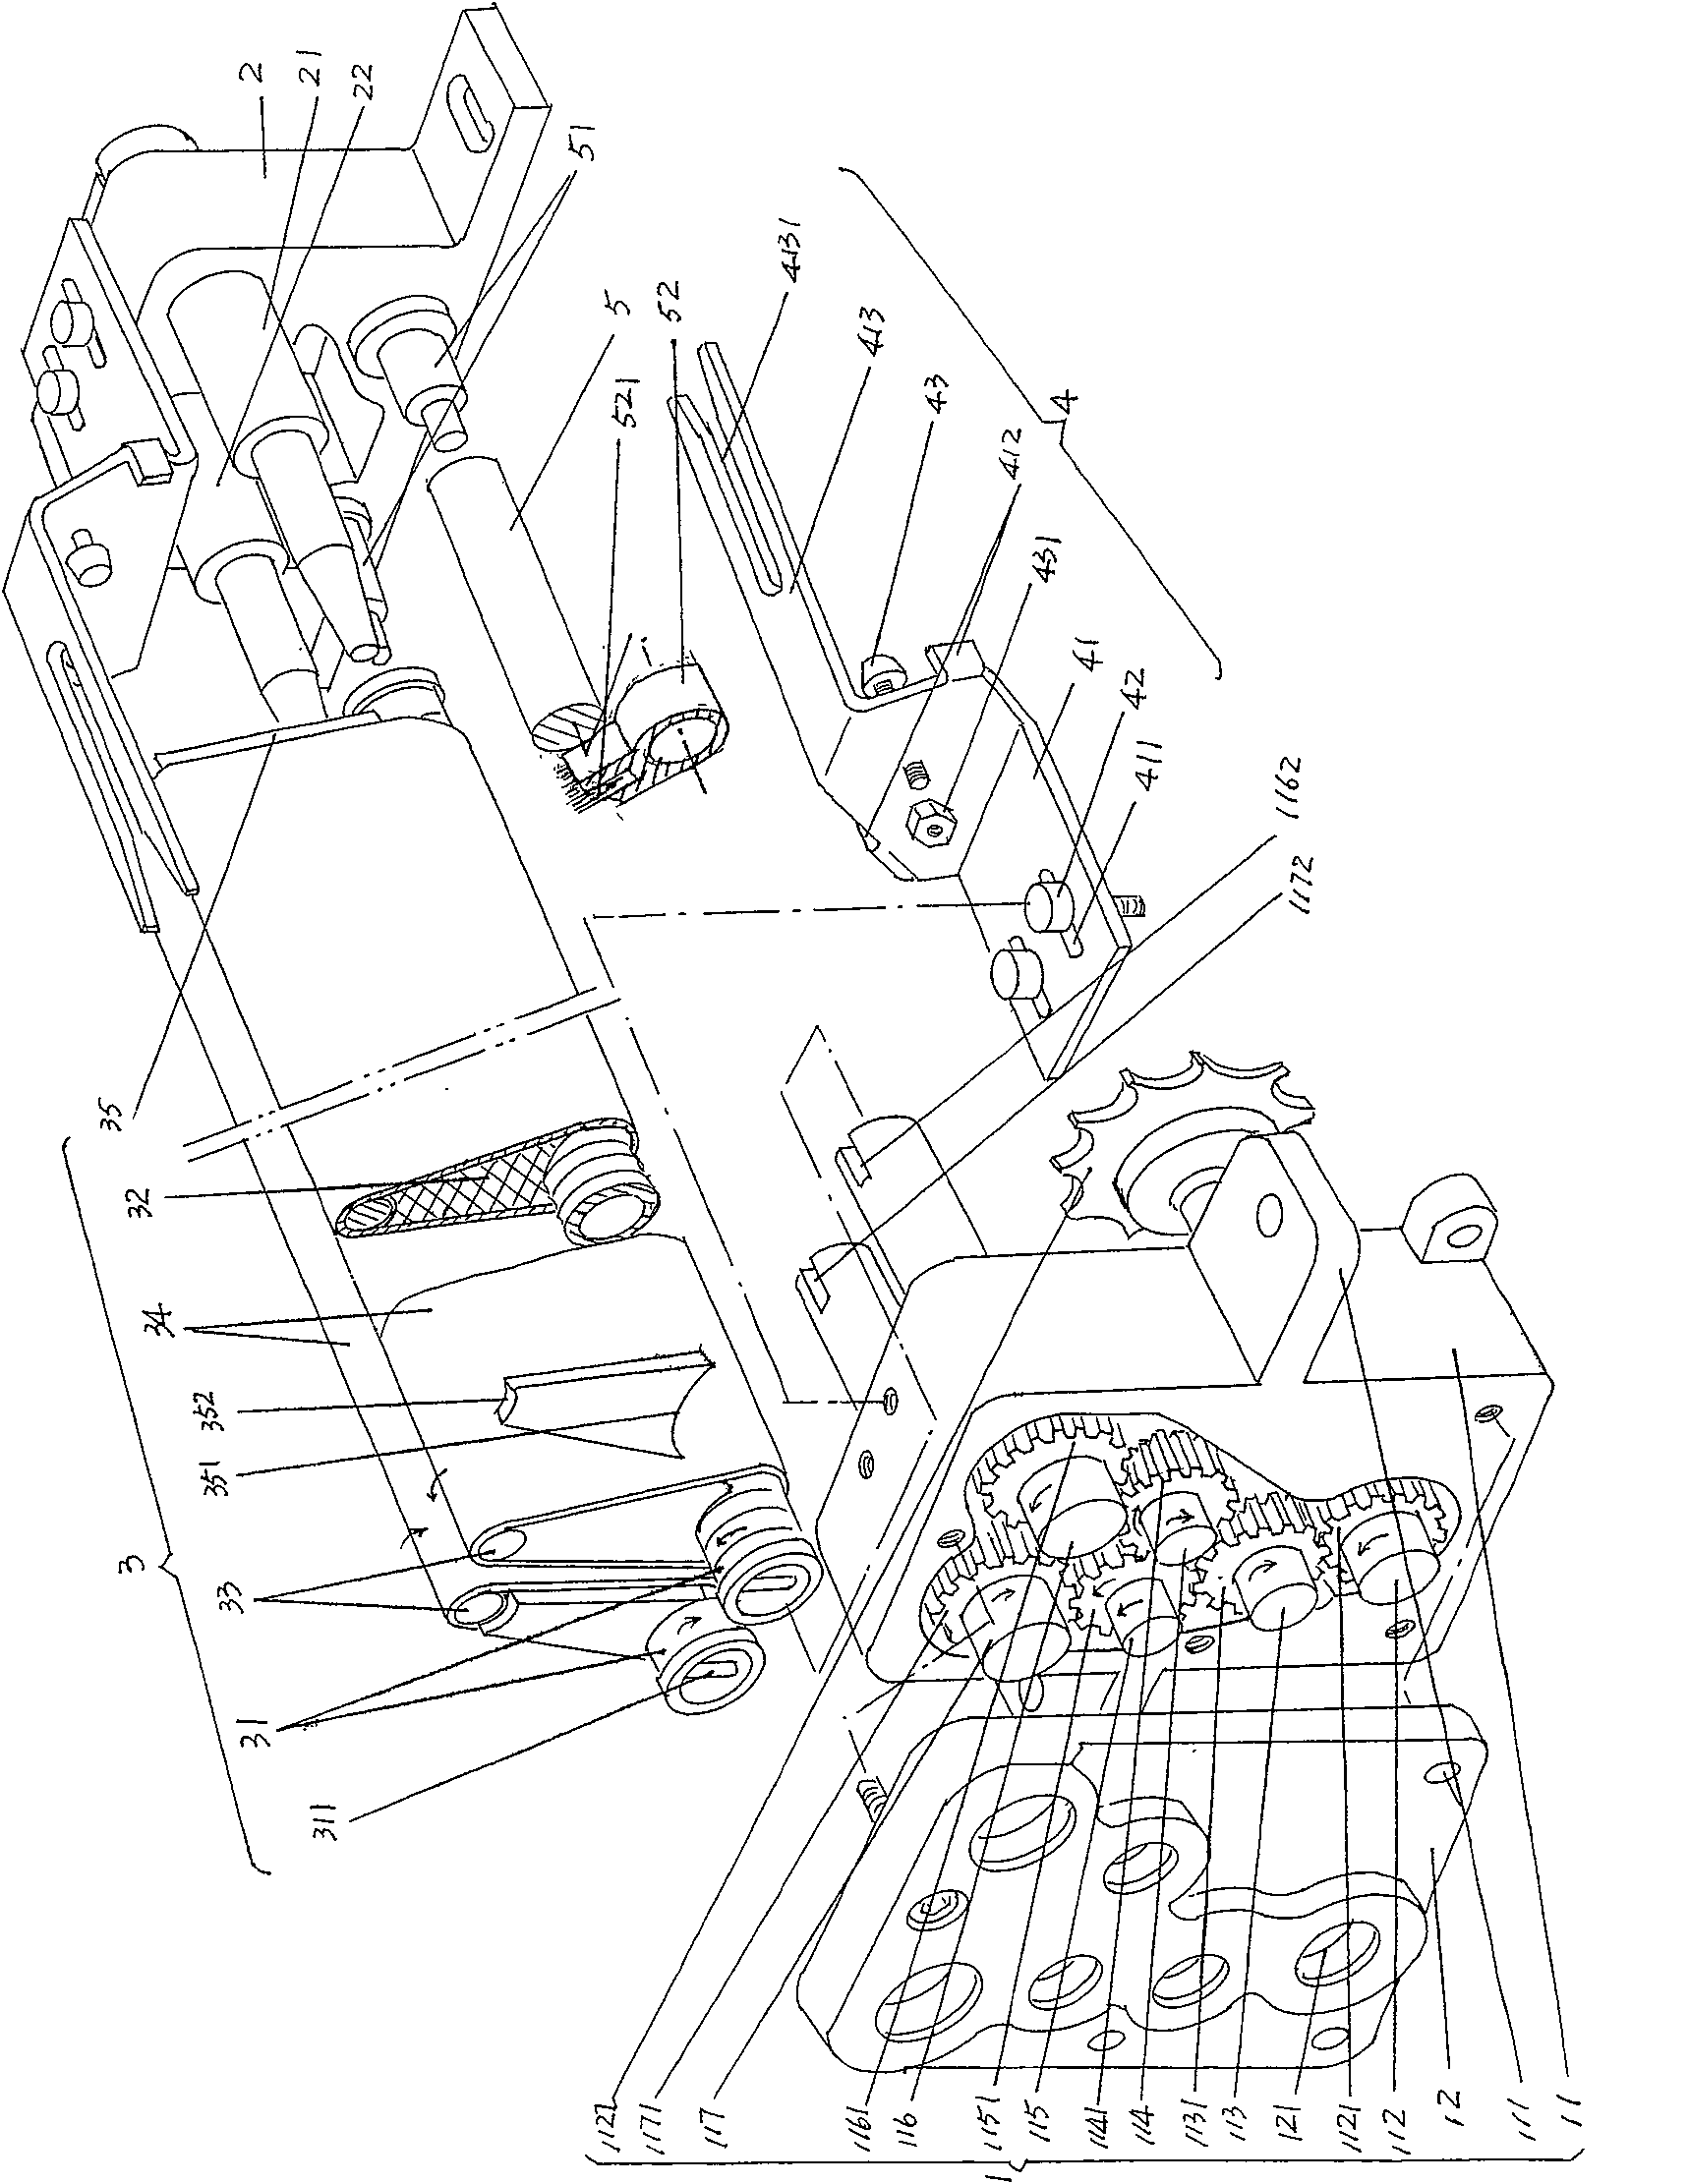 Sub-roller mechanism of computer plain flat knitter